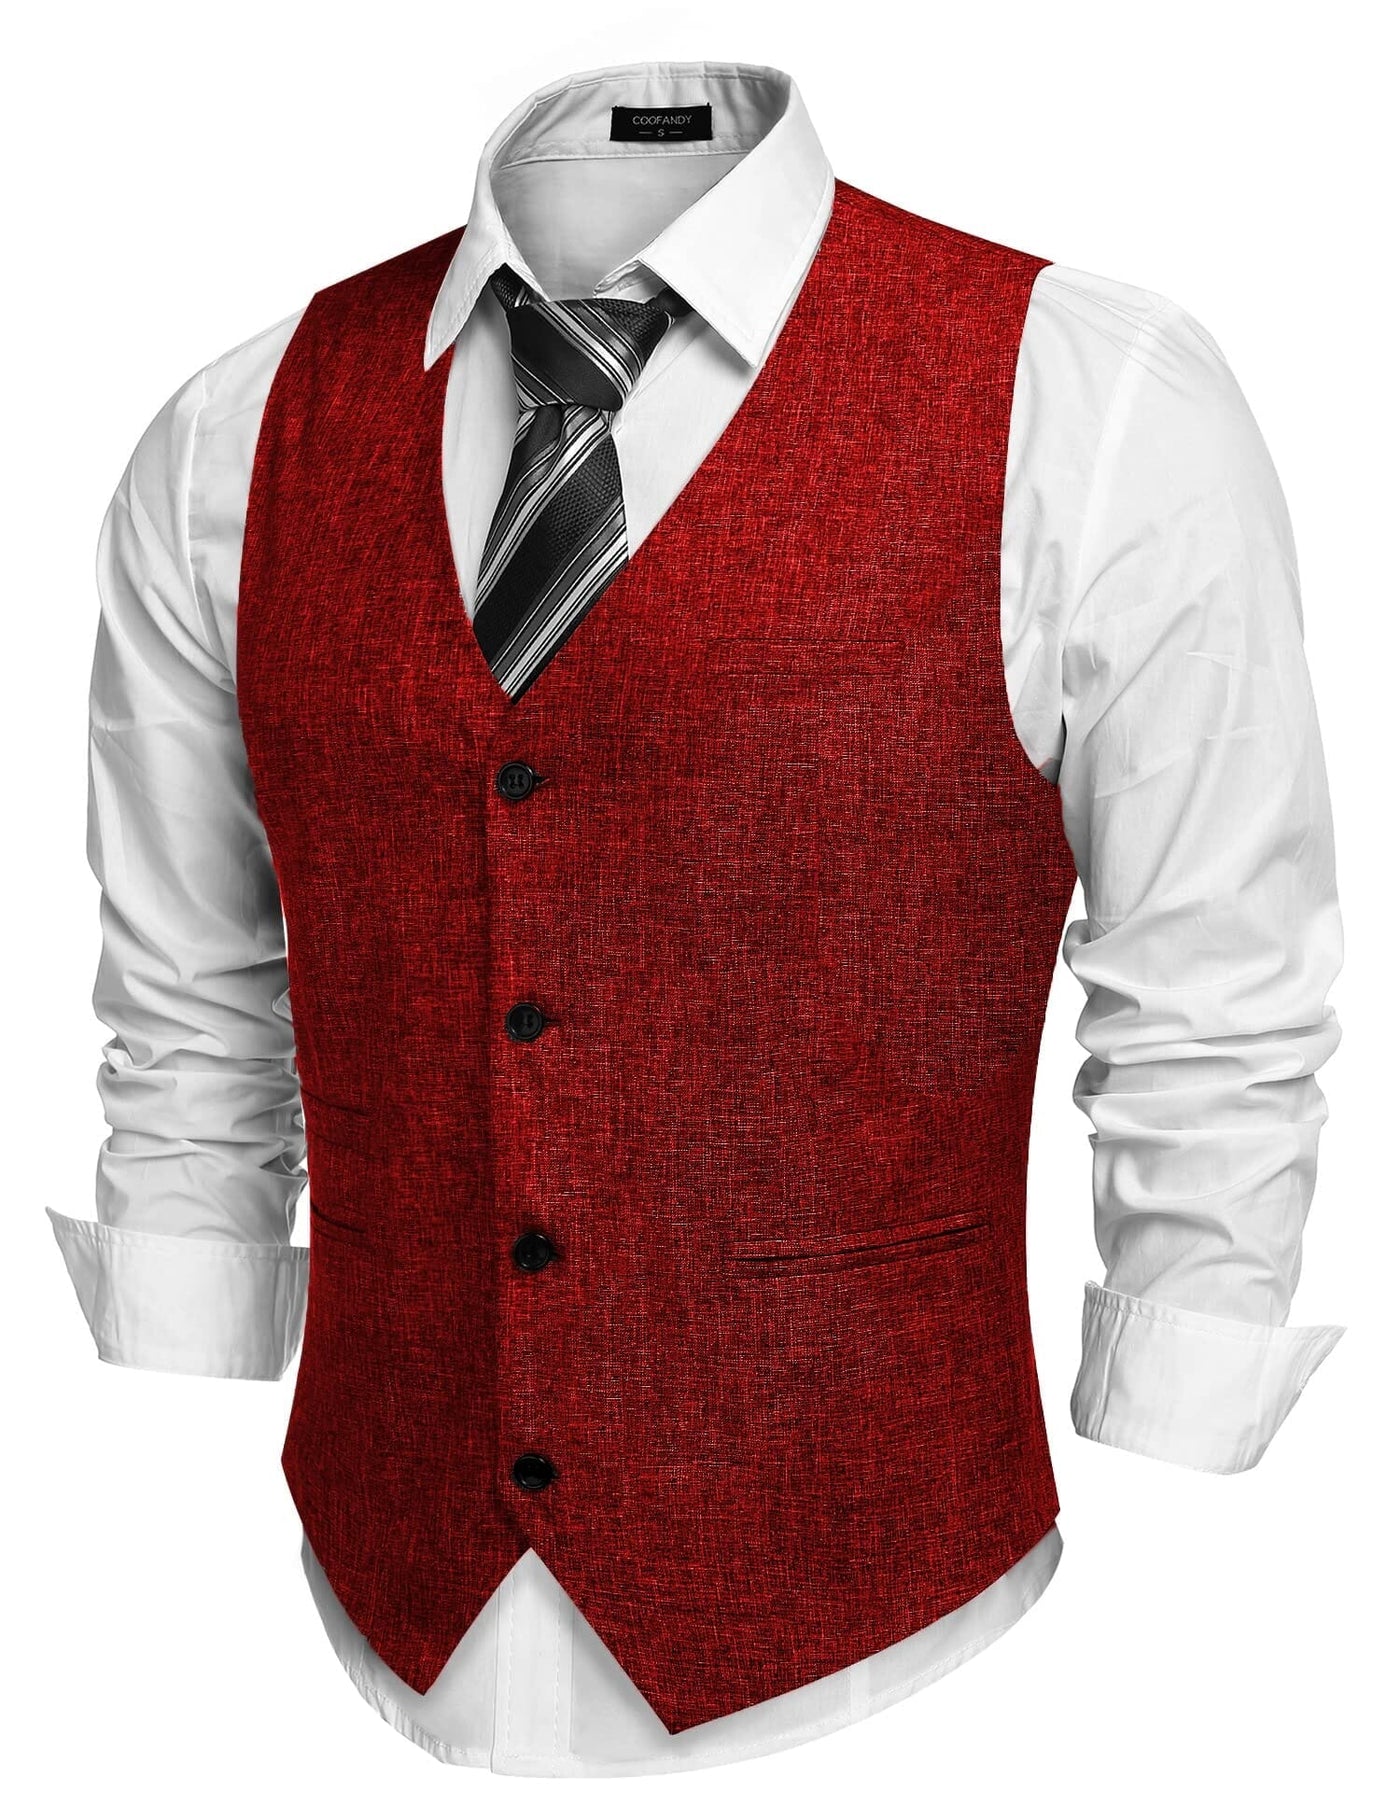 Coofandy Waistcoat Business Vests (US Only) Vest coofandy Wine Red S 